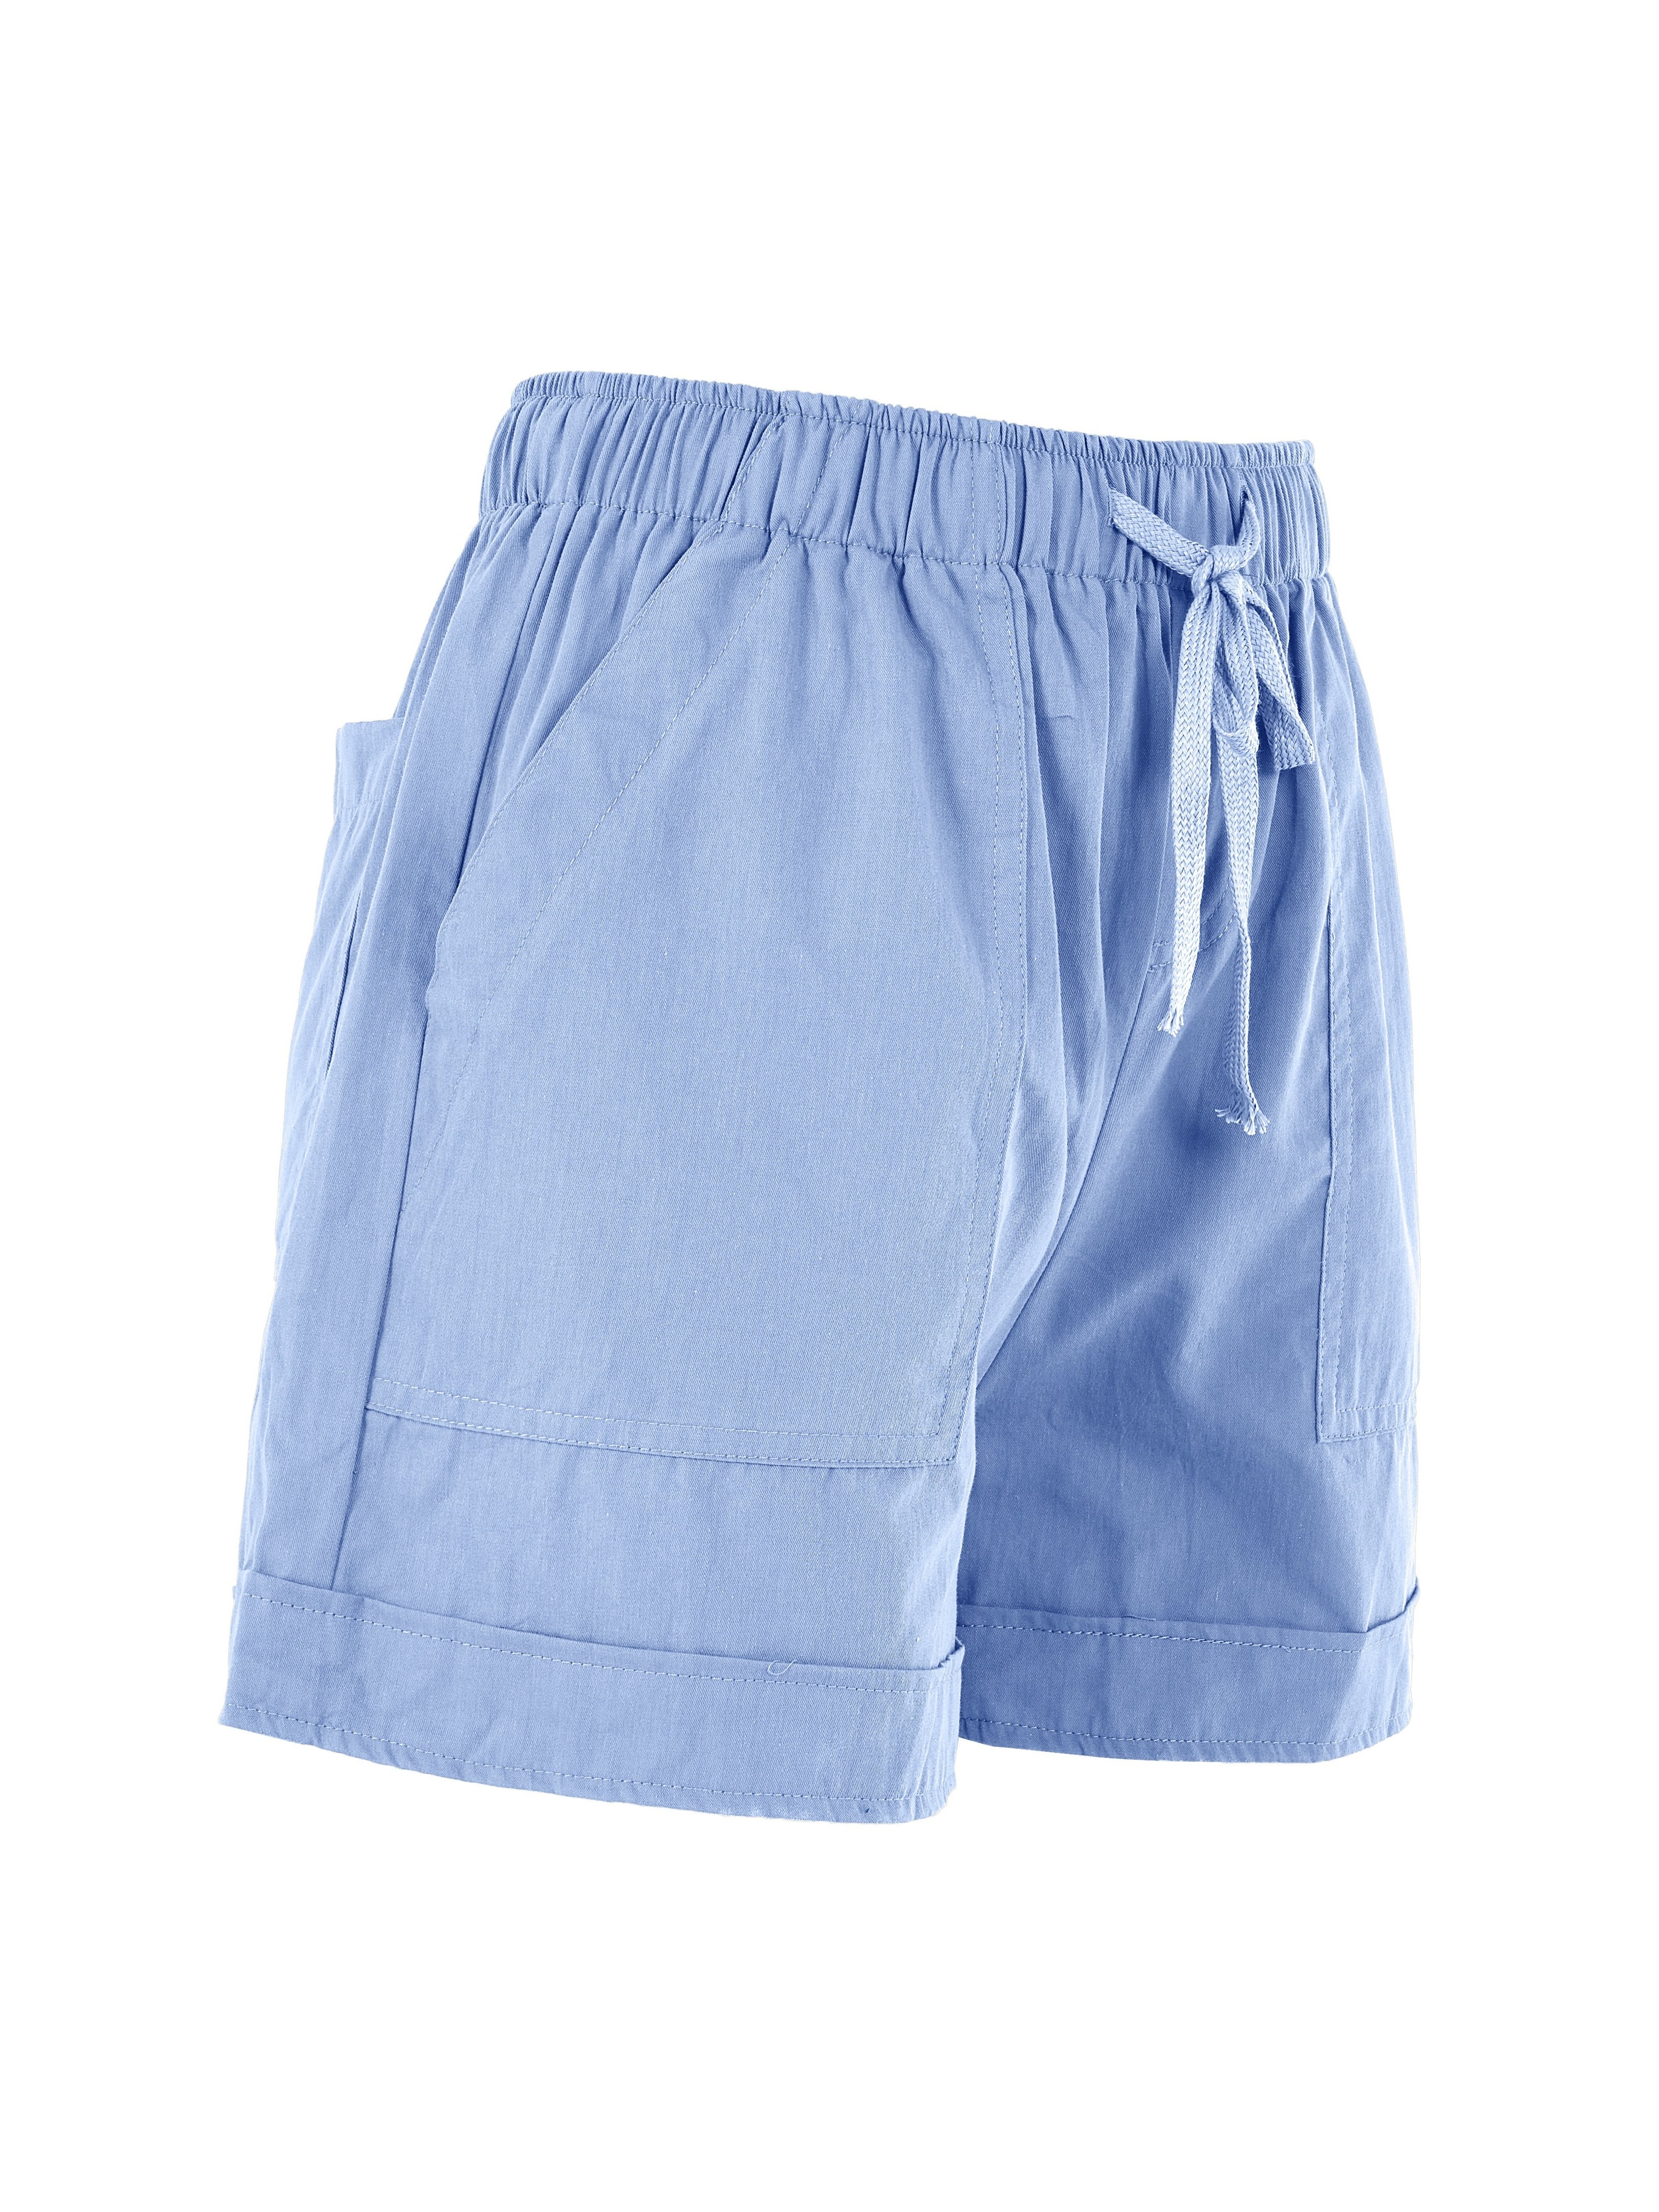 Linen Shorts for Women WHISTLER in Teal Blue / Elastic Waist